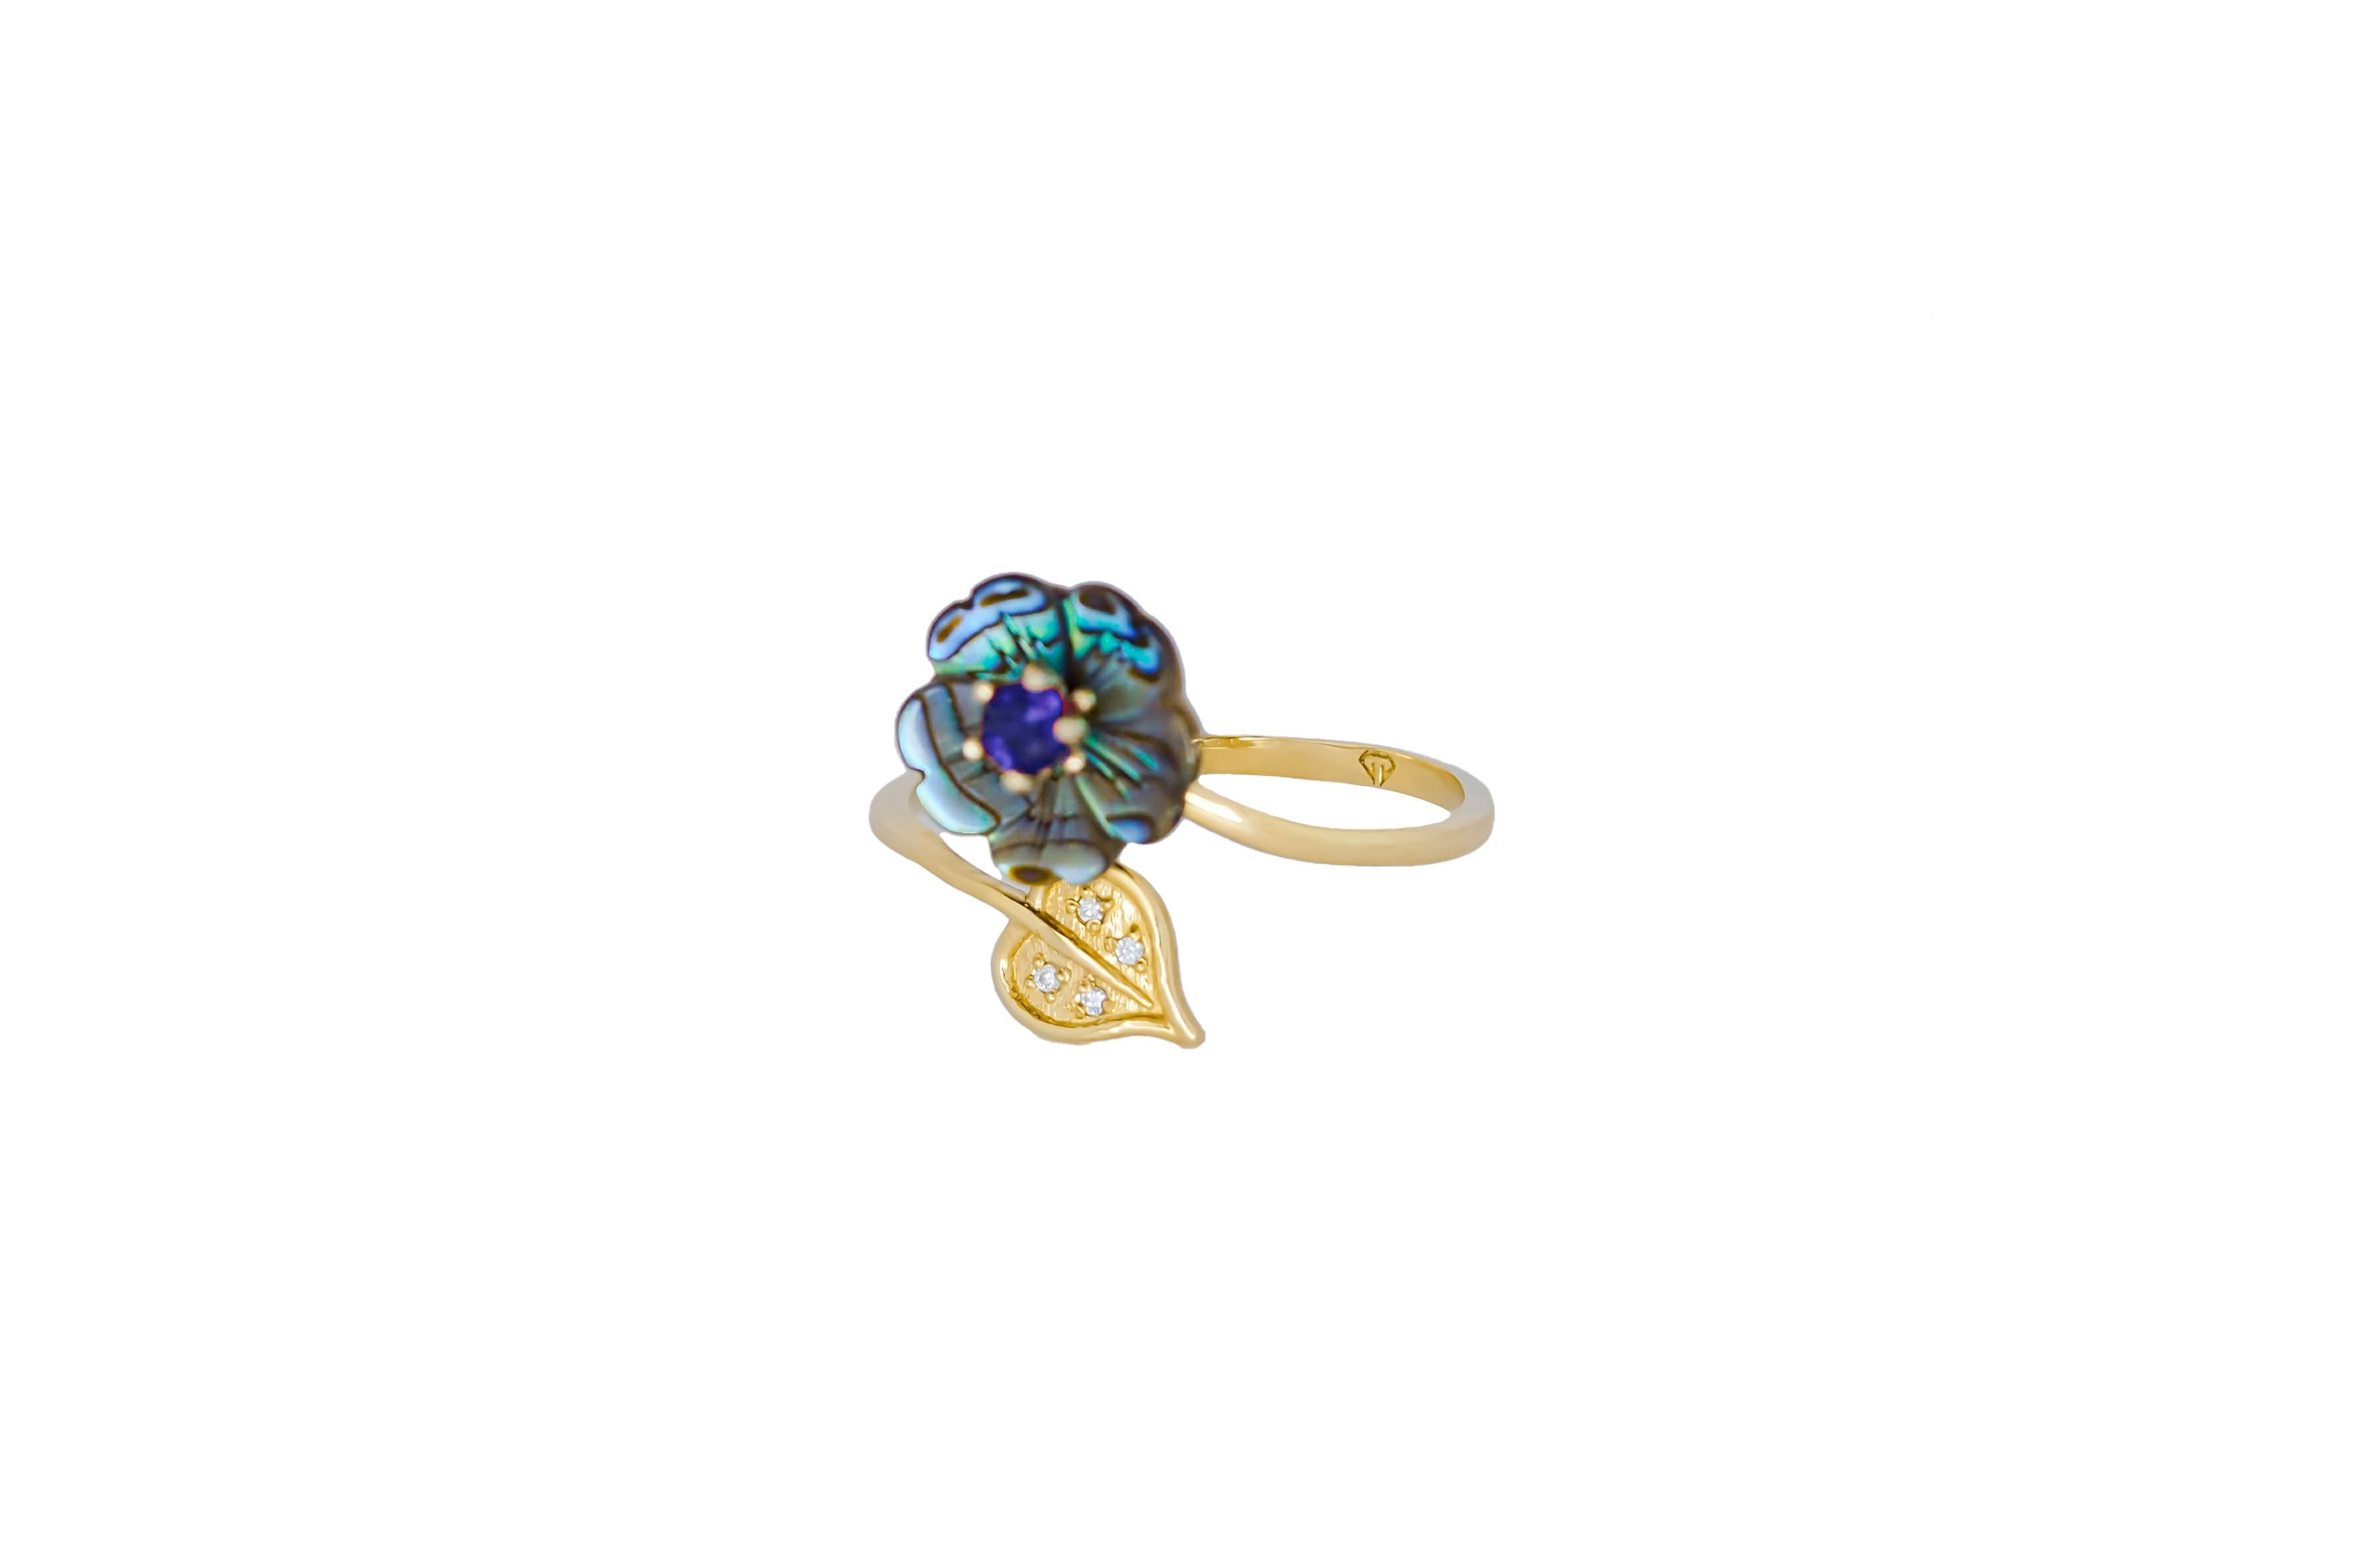 For Sale:  Royal blue gemstone 14k  gold ring.  5